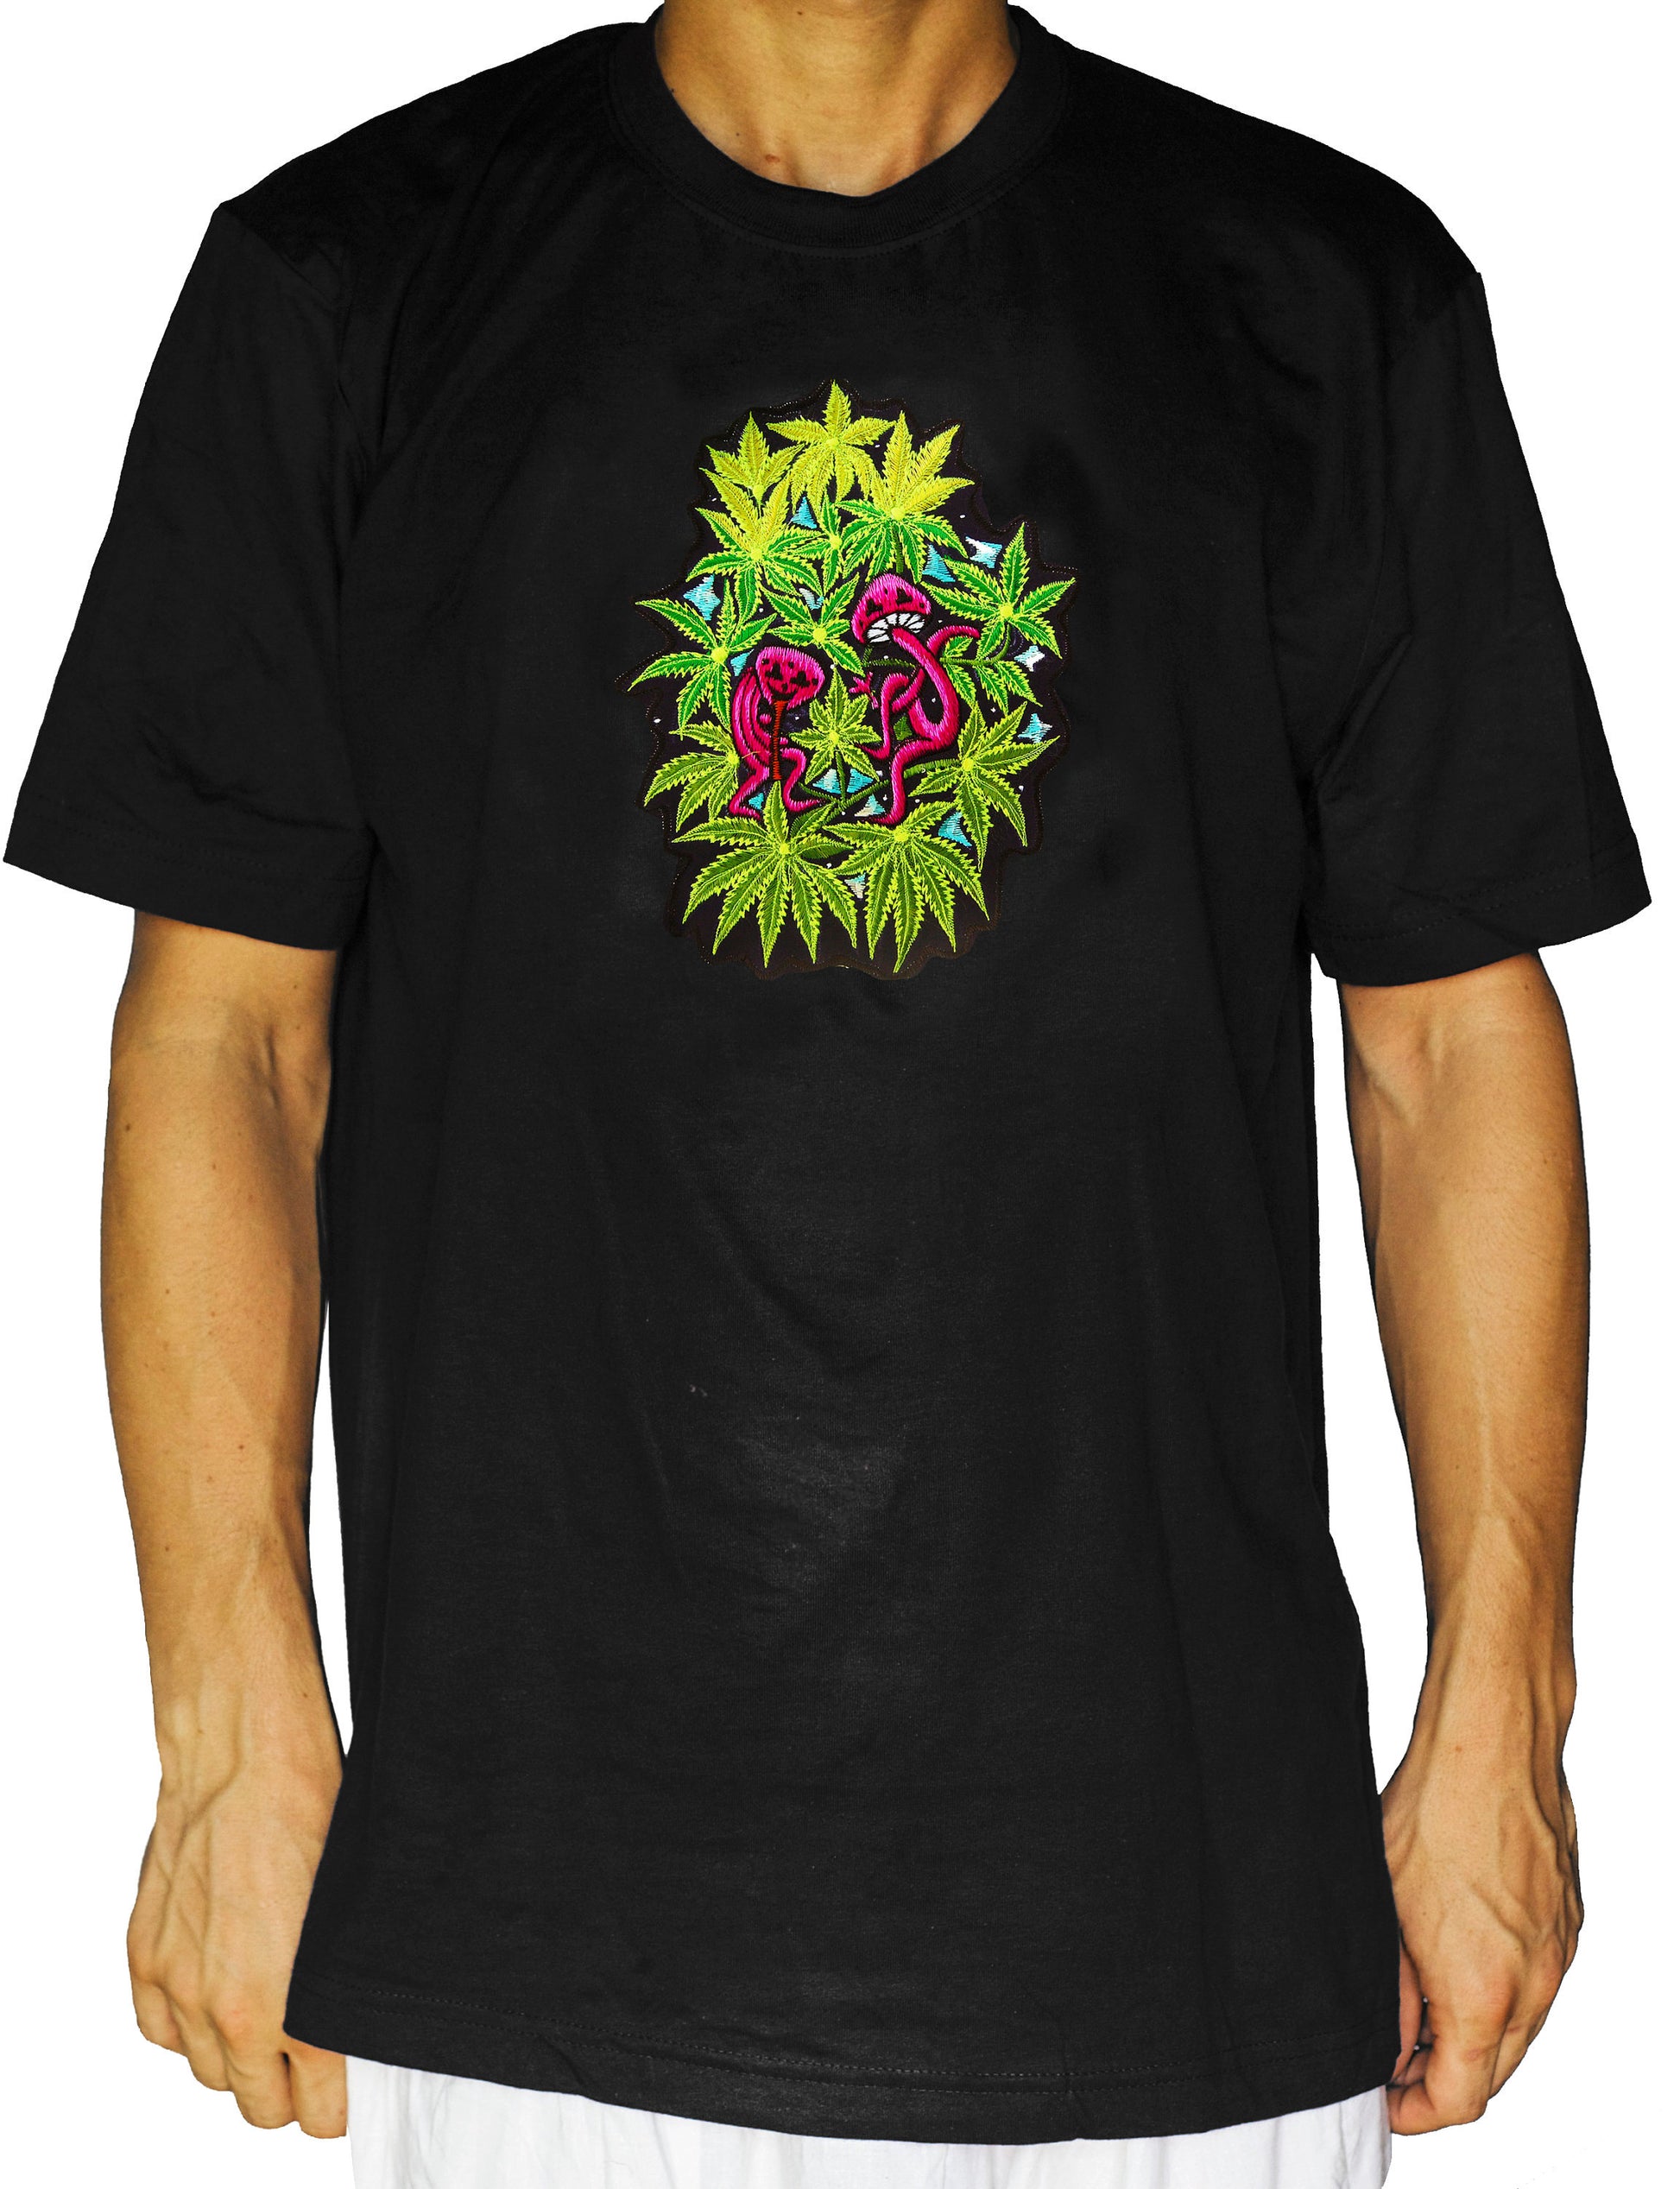 Dancing Mushrooms T-Shirt weed cannabis marihuana psilos psychedelic no print goa t-shirt